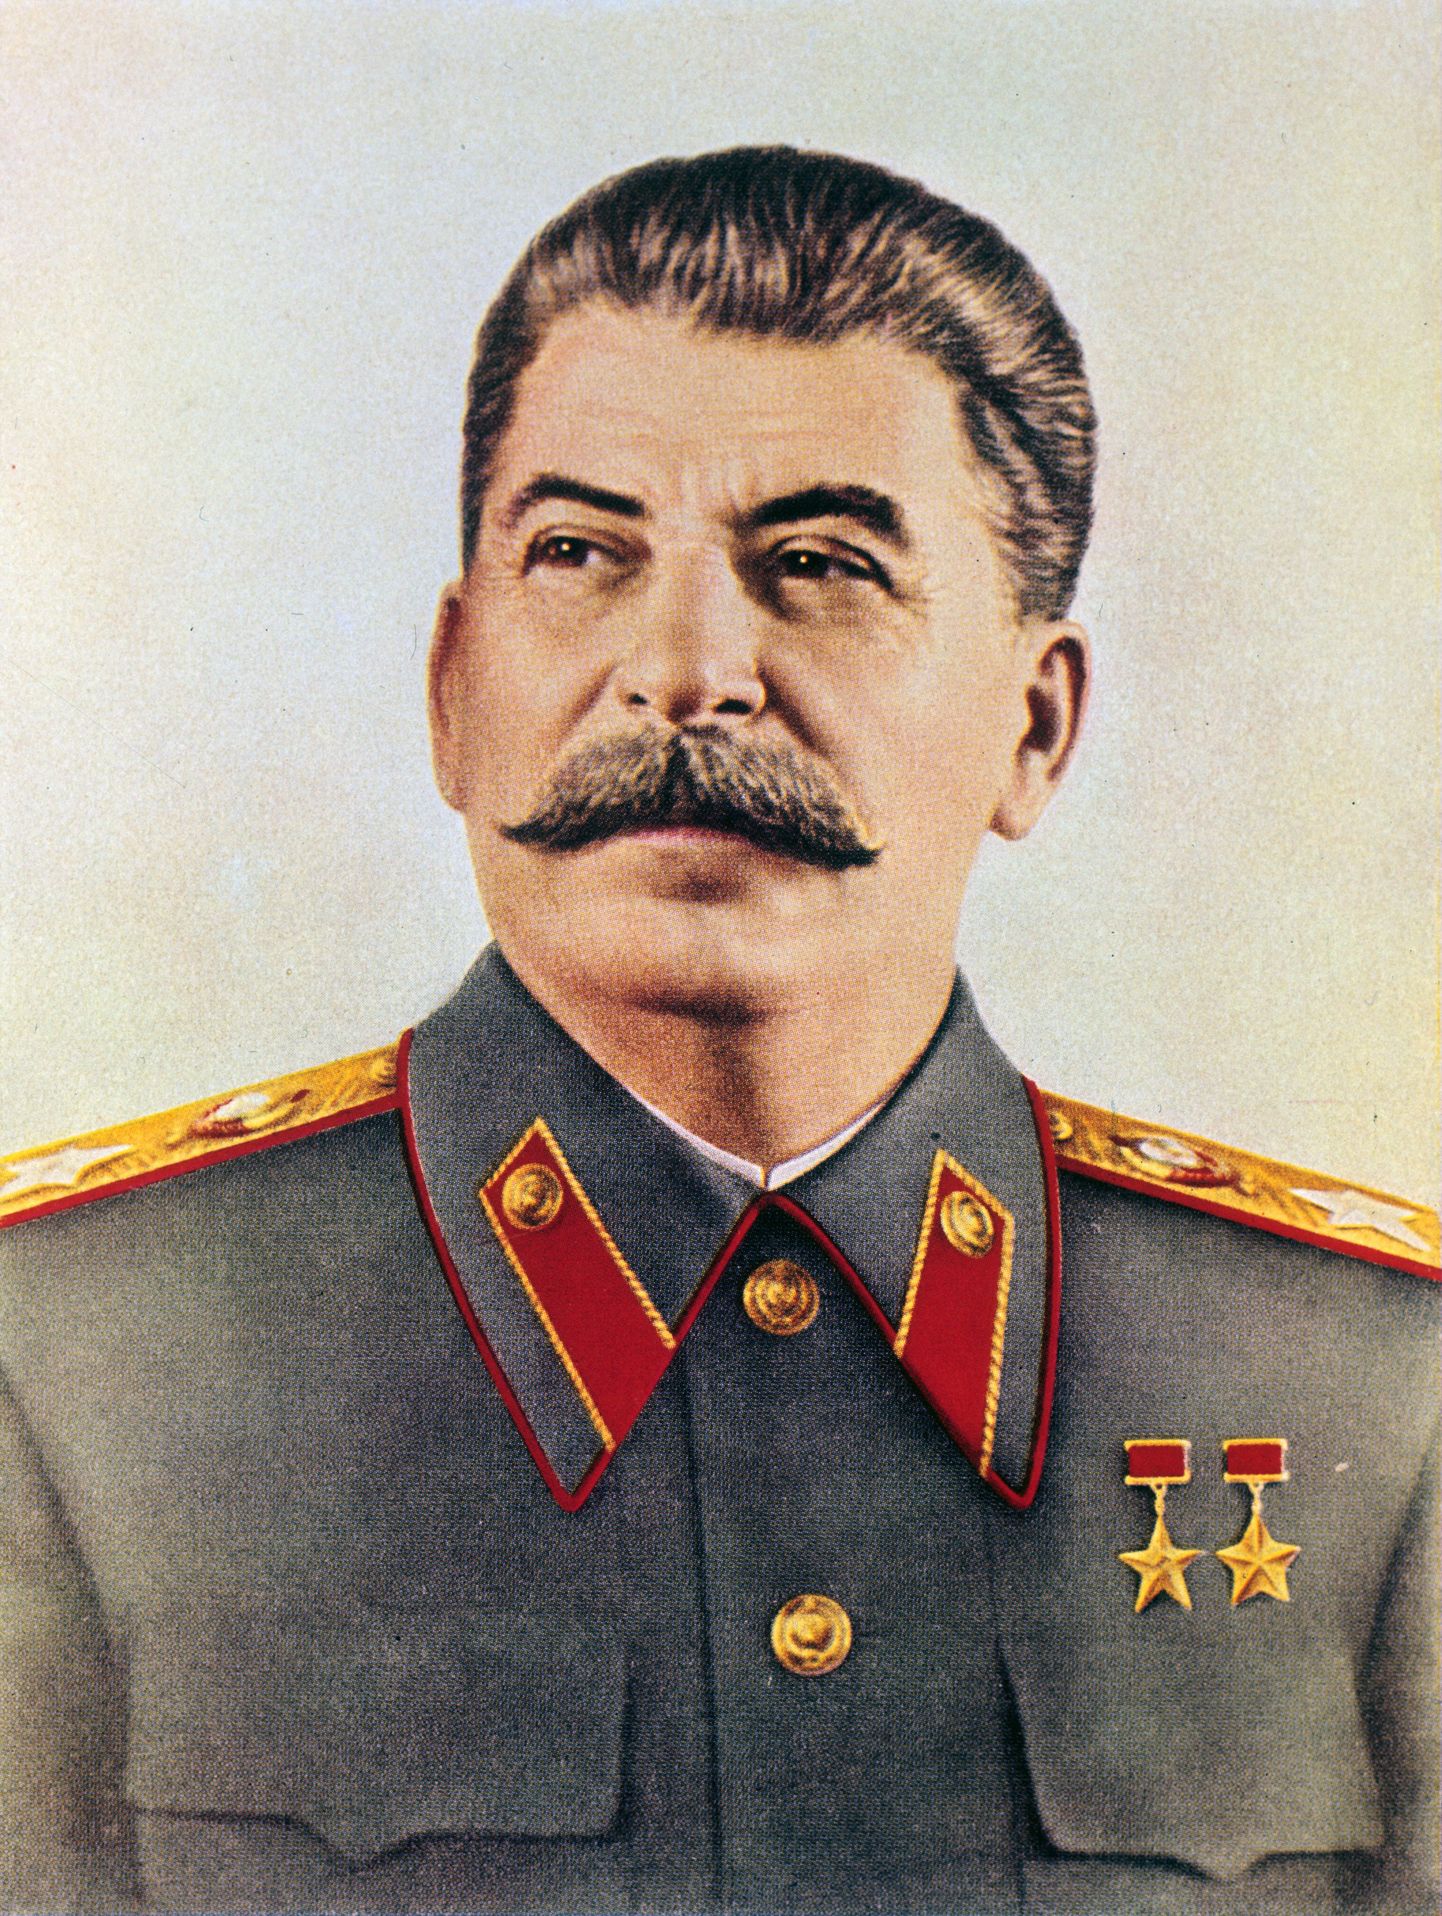 Stalini hüüdnimed olid 50ndatel Isa, Vunts ja Joosep.